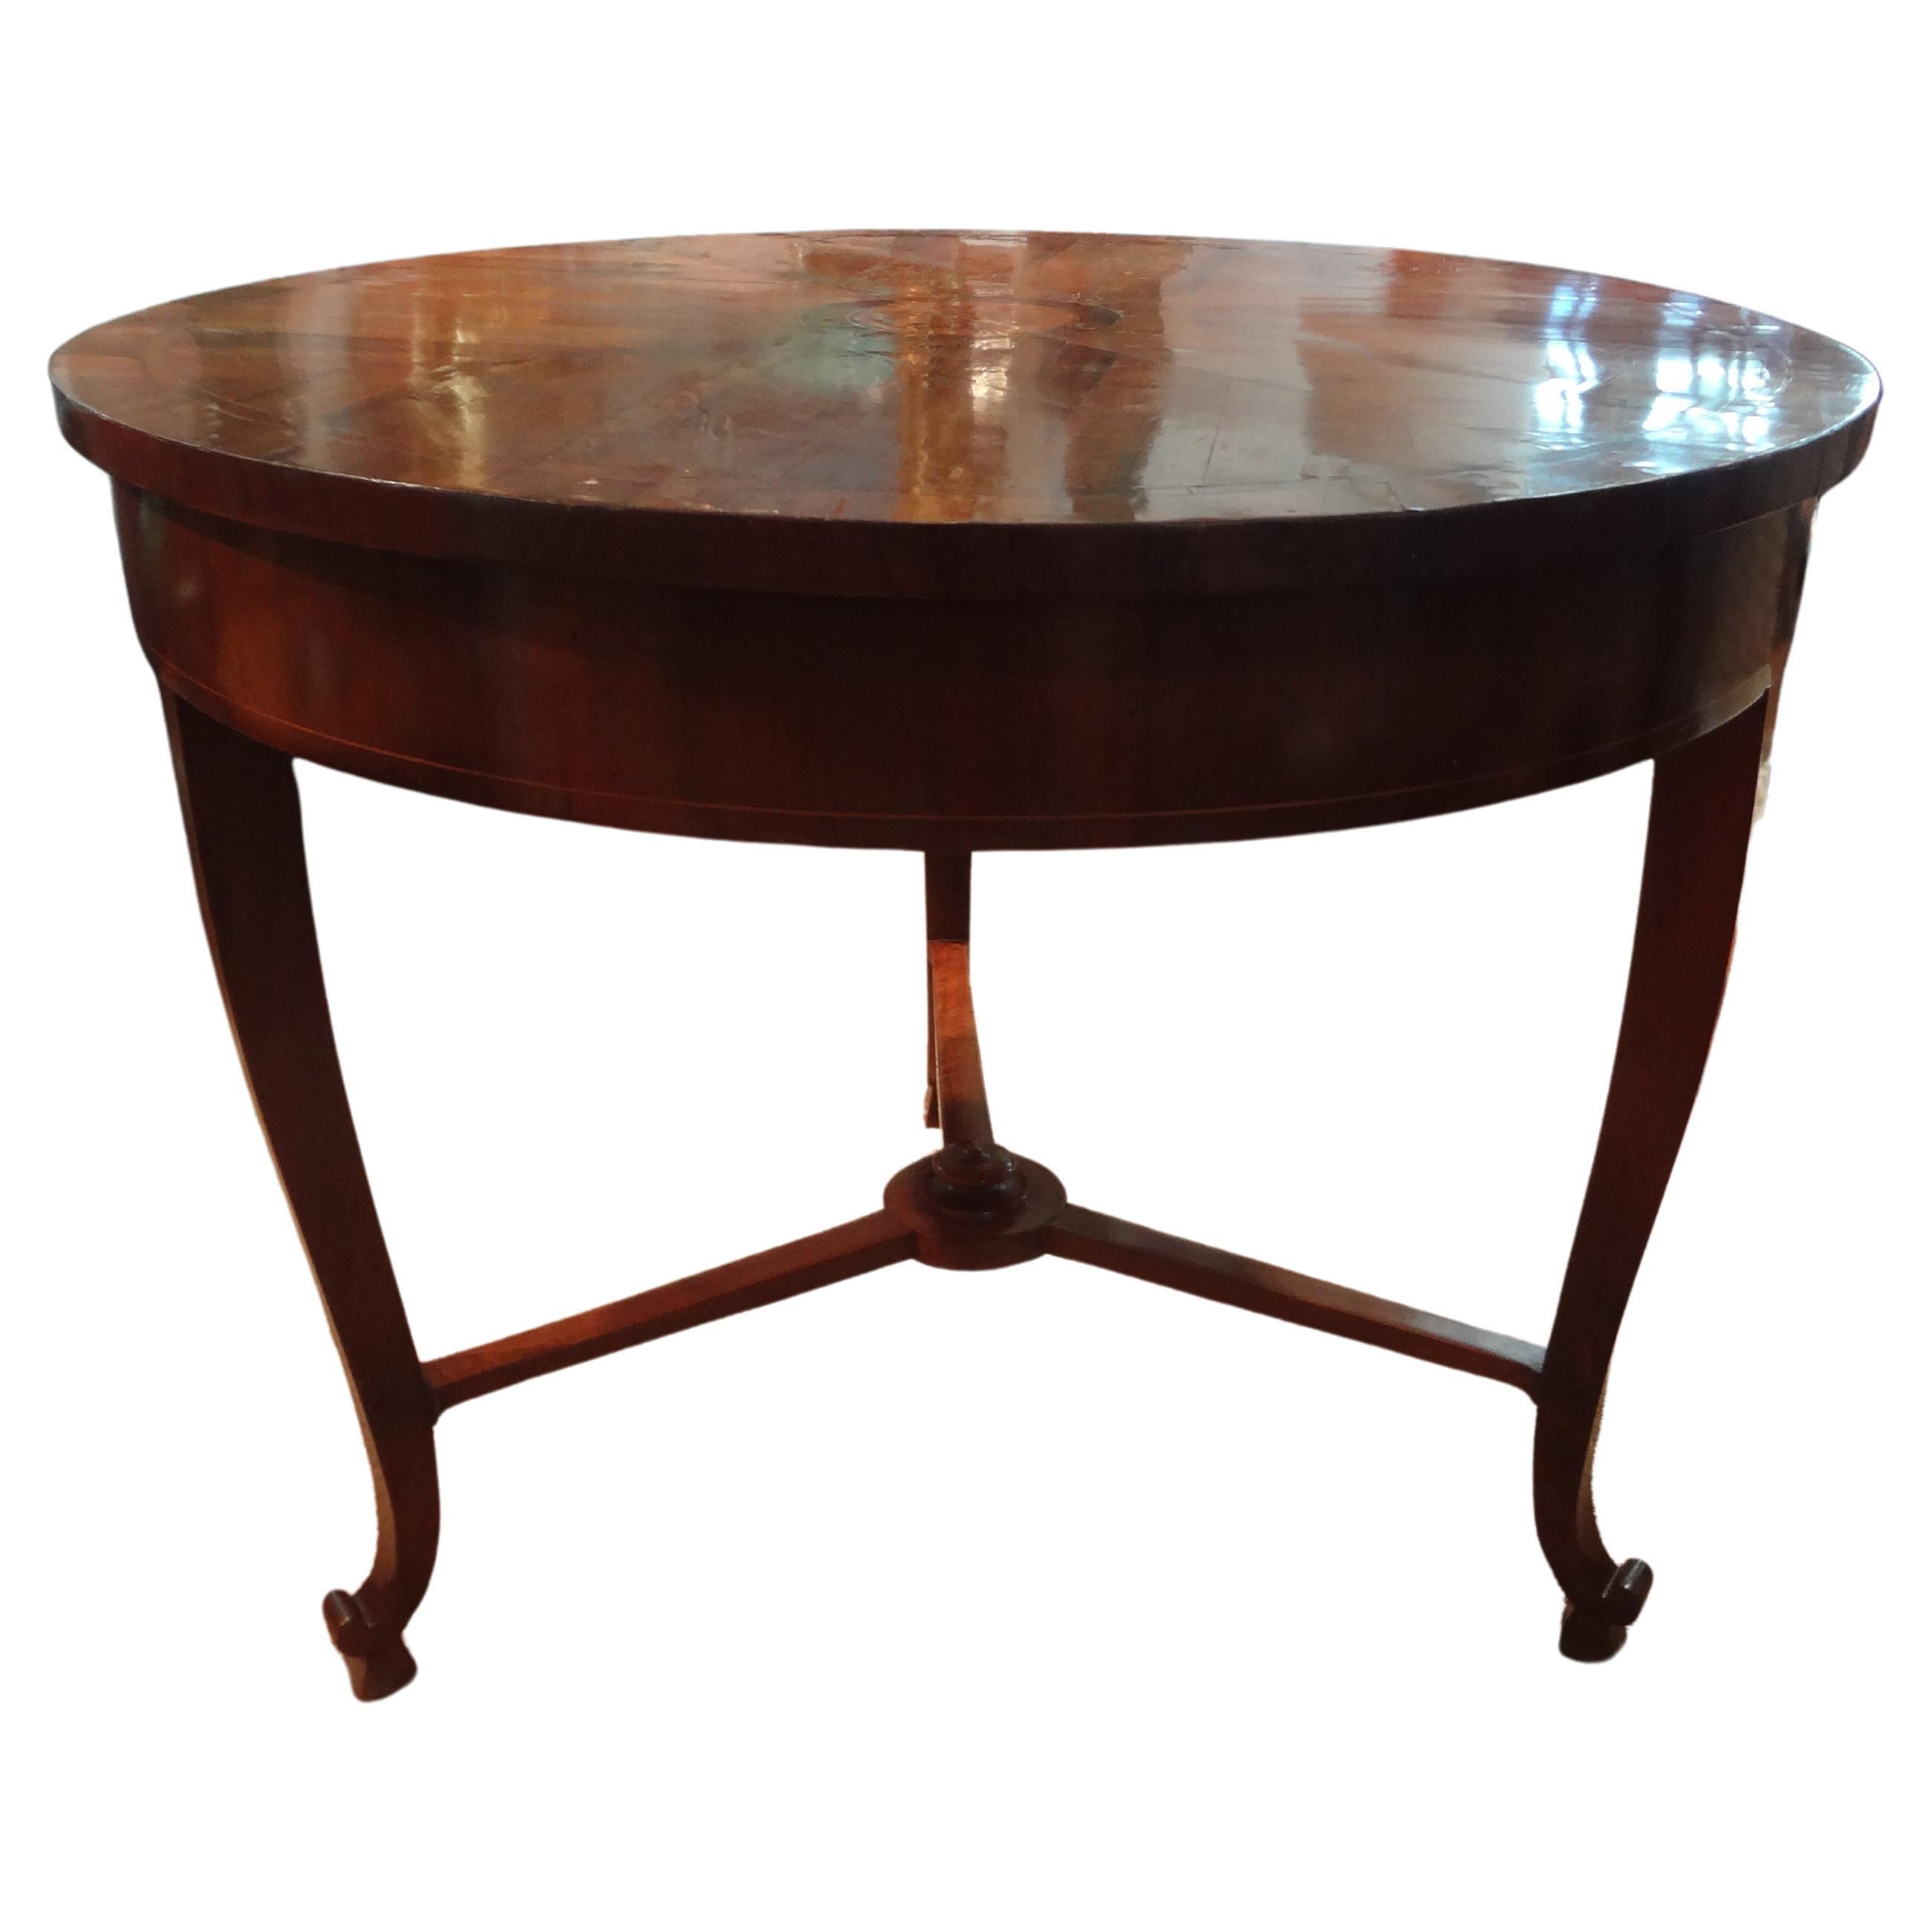 19. Jahrhundert Italienisch Nussbaum Center Table oder Spieltisch.
Dieser ungewöhnliche antike italienische Nussbaum-Mitteltisch oder Spieltisch im neoklassizistischen Stil hat eine schöne Intarsieneinlage in der Mitte  Design, eine Schublade und